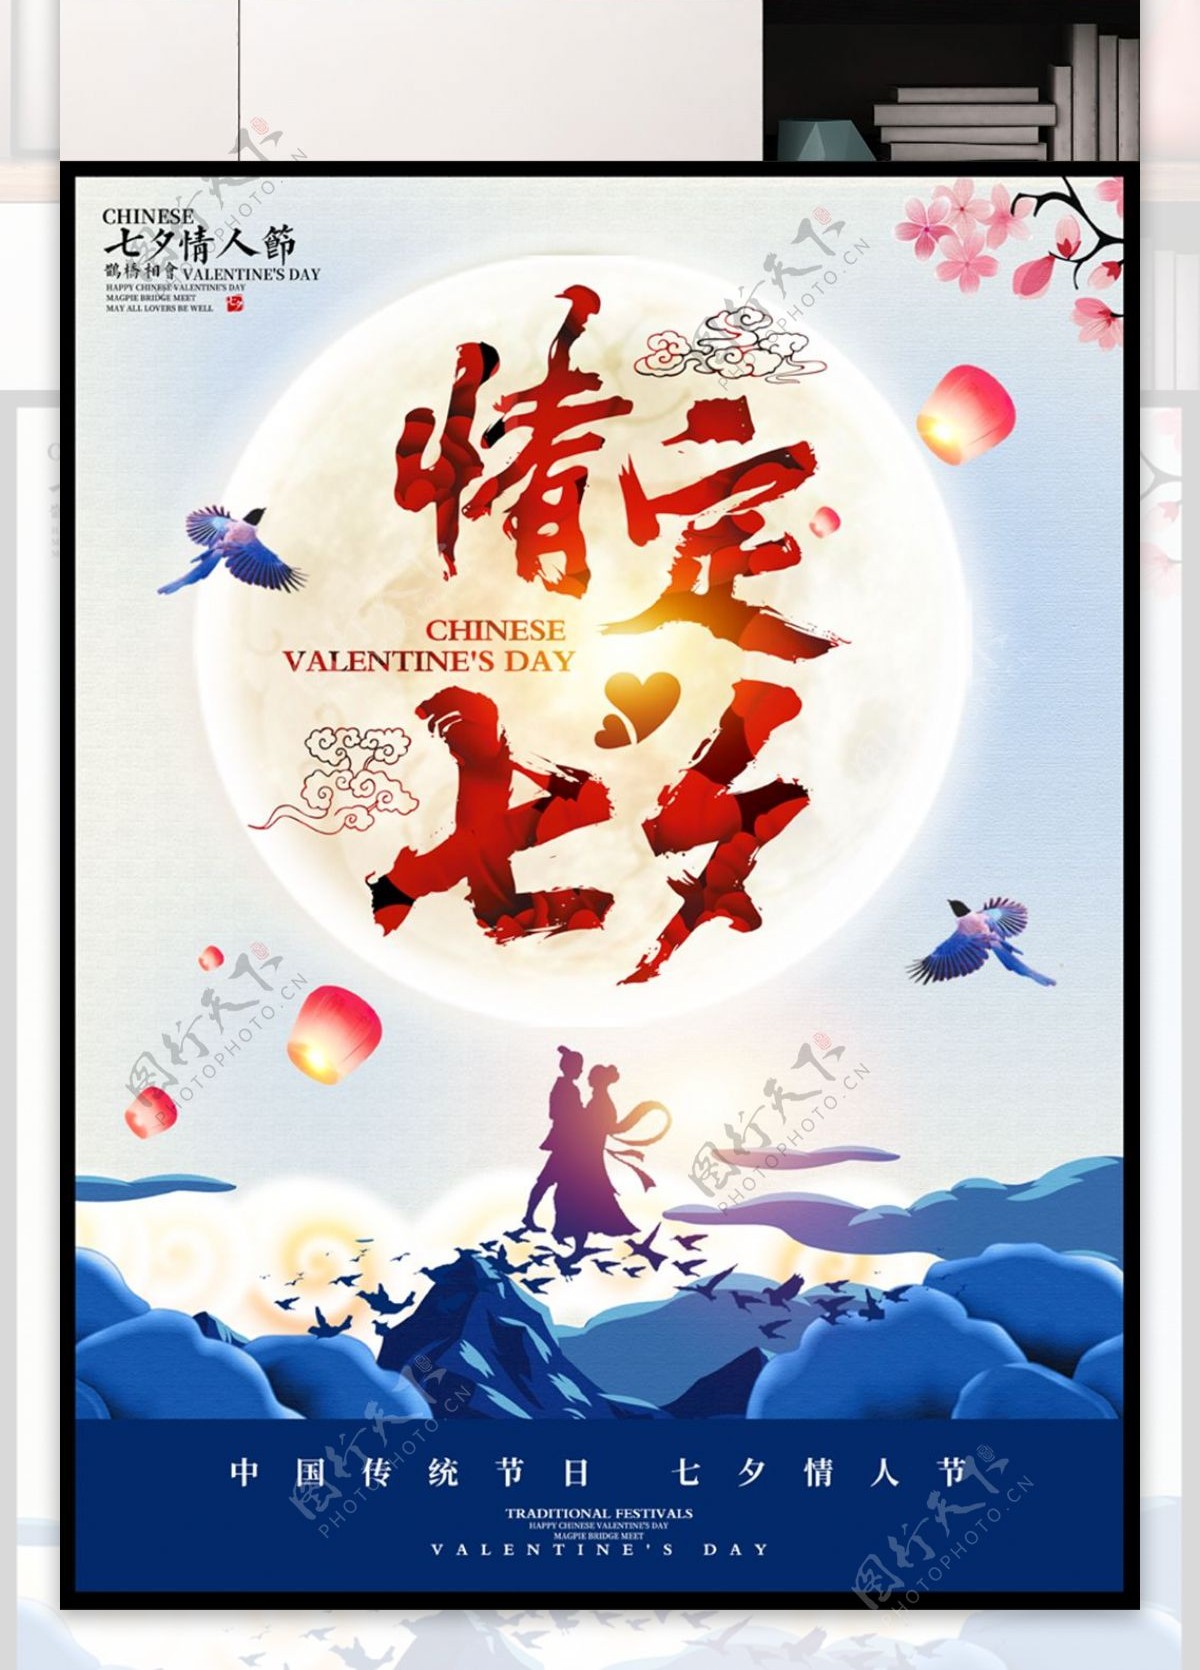 七夕节促销海报设计